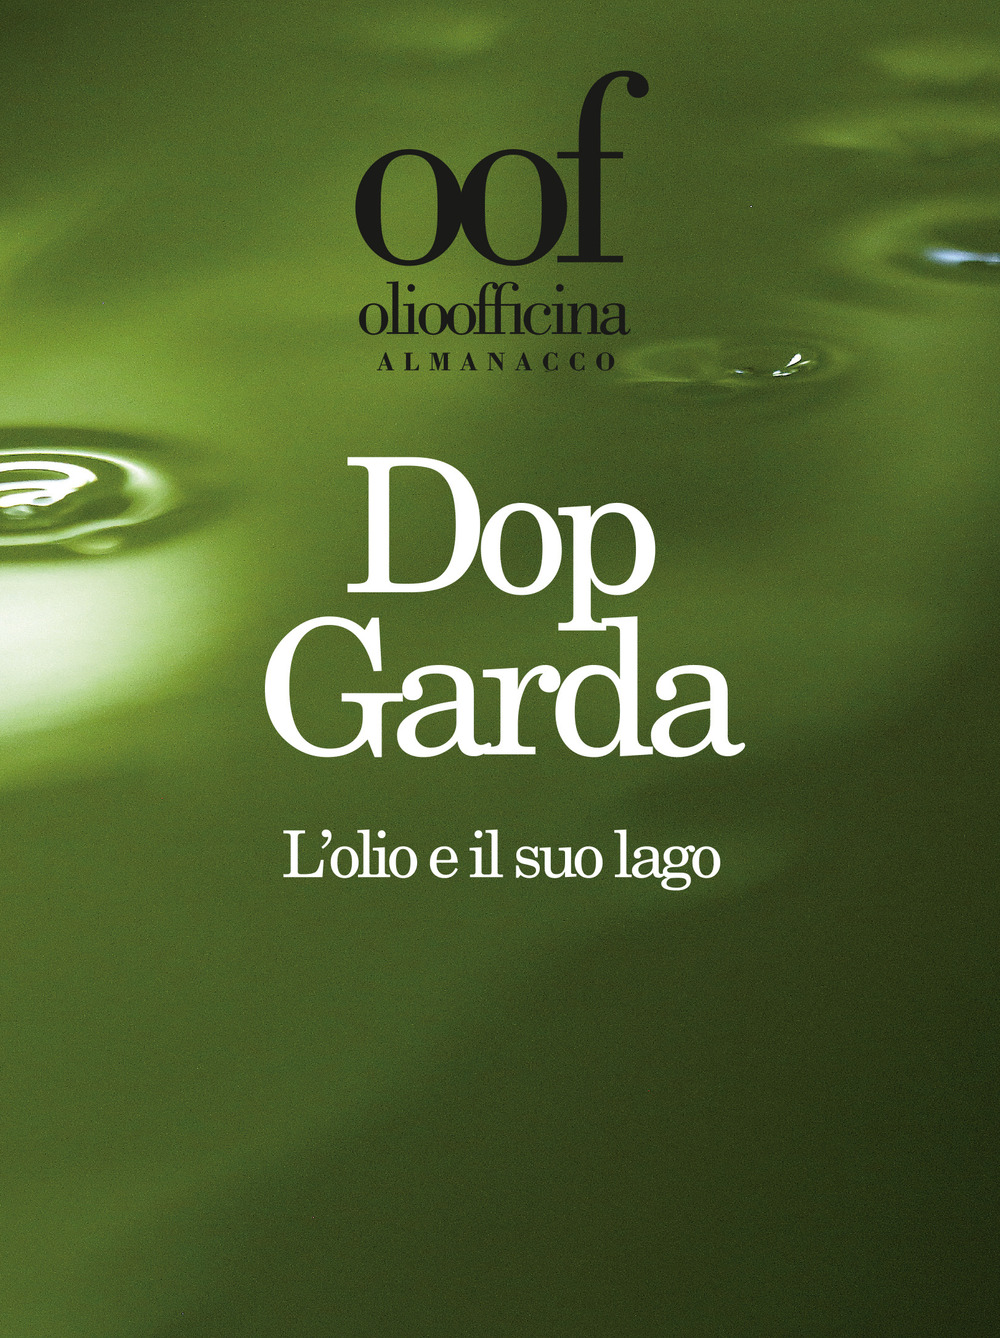 Olio officina almanacco 2019. Dop Garda. L'olio e il suo lago